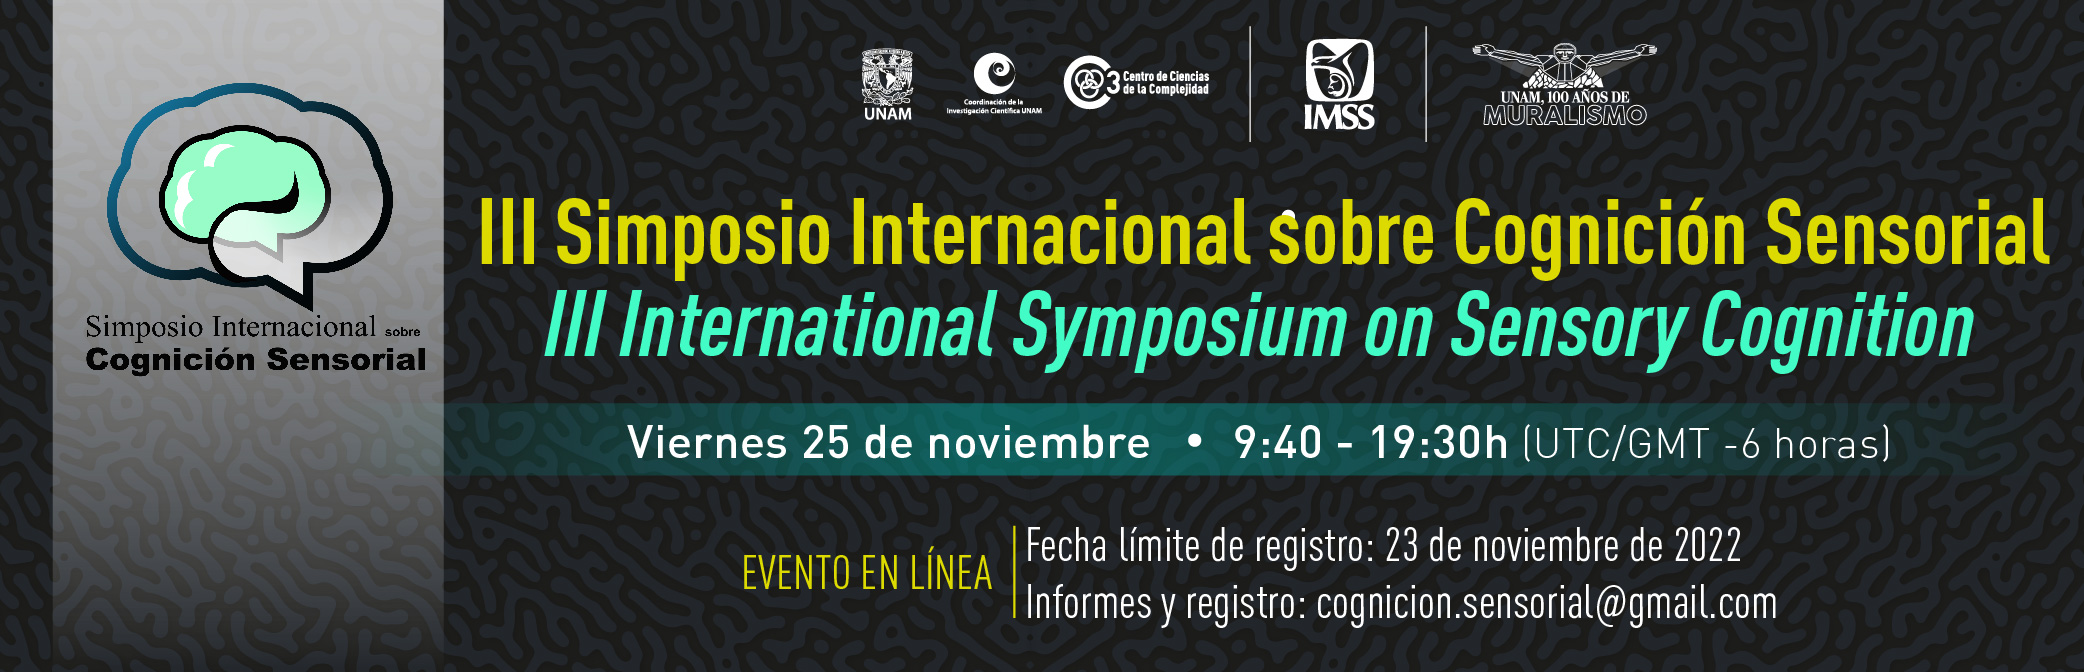 III Simposio Internacional sobre Cognición Sensorial 2022